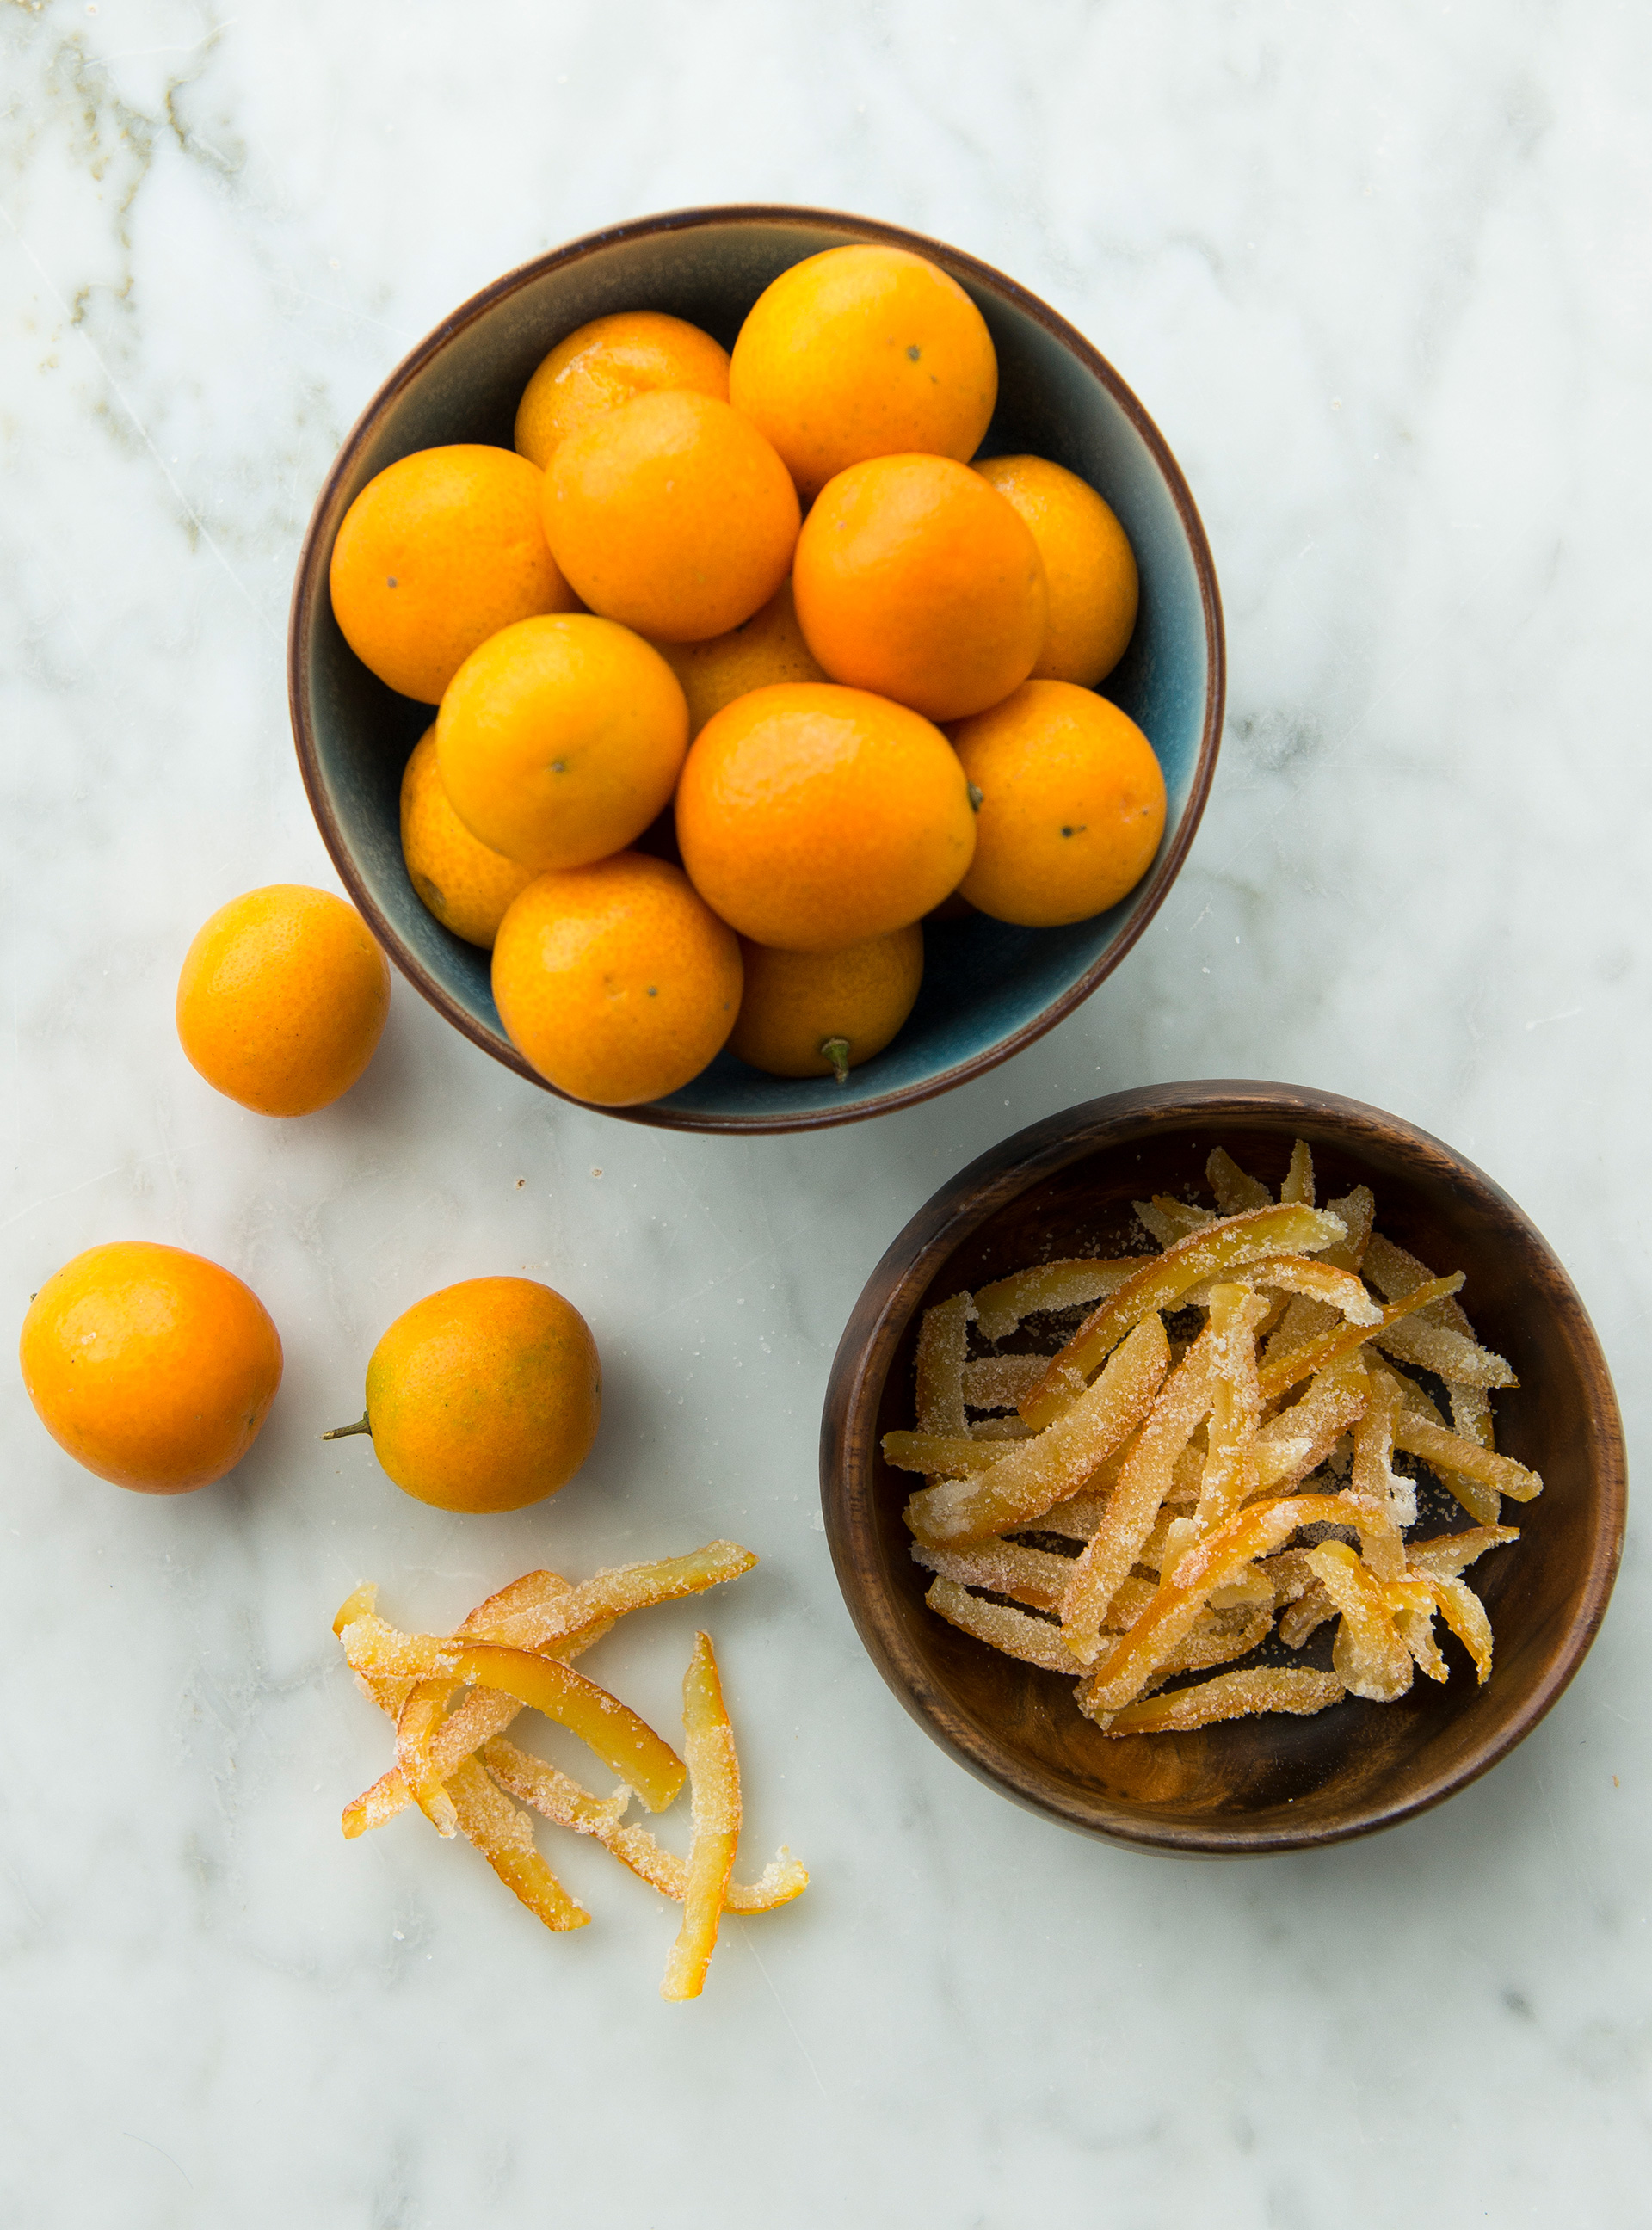 Orange confite au sucre, un dessert naturel et simple